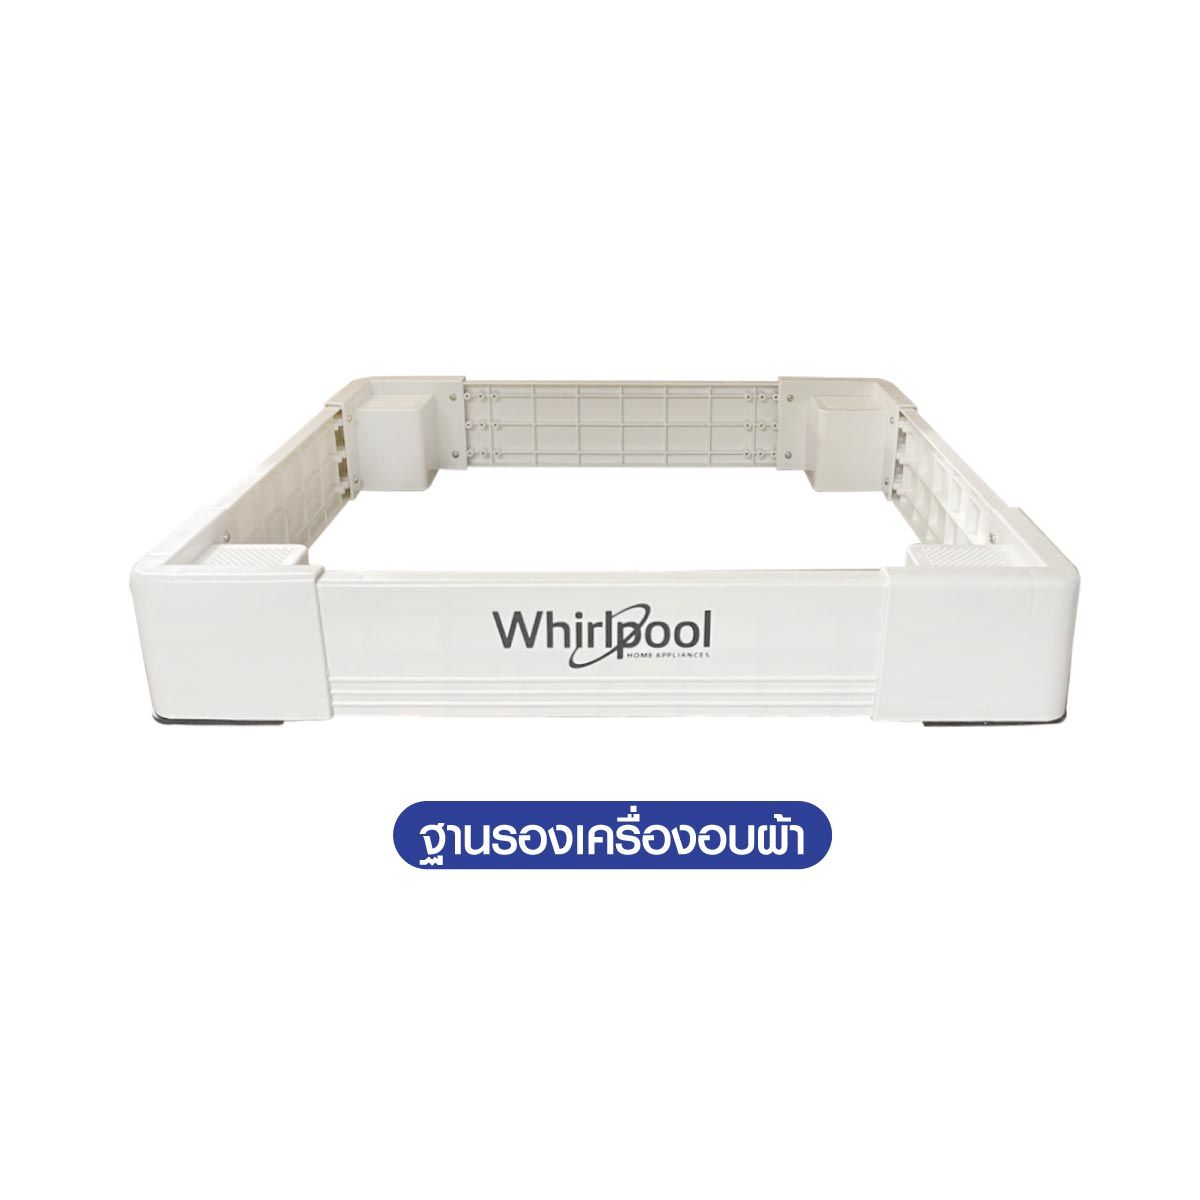 Whirlpool เครื่องอบผ้า แบบใช้แก๊ส รุ่น 3DWGD4815FW ความจุ 15kg